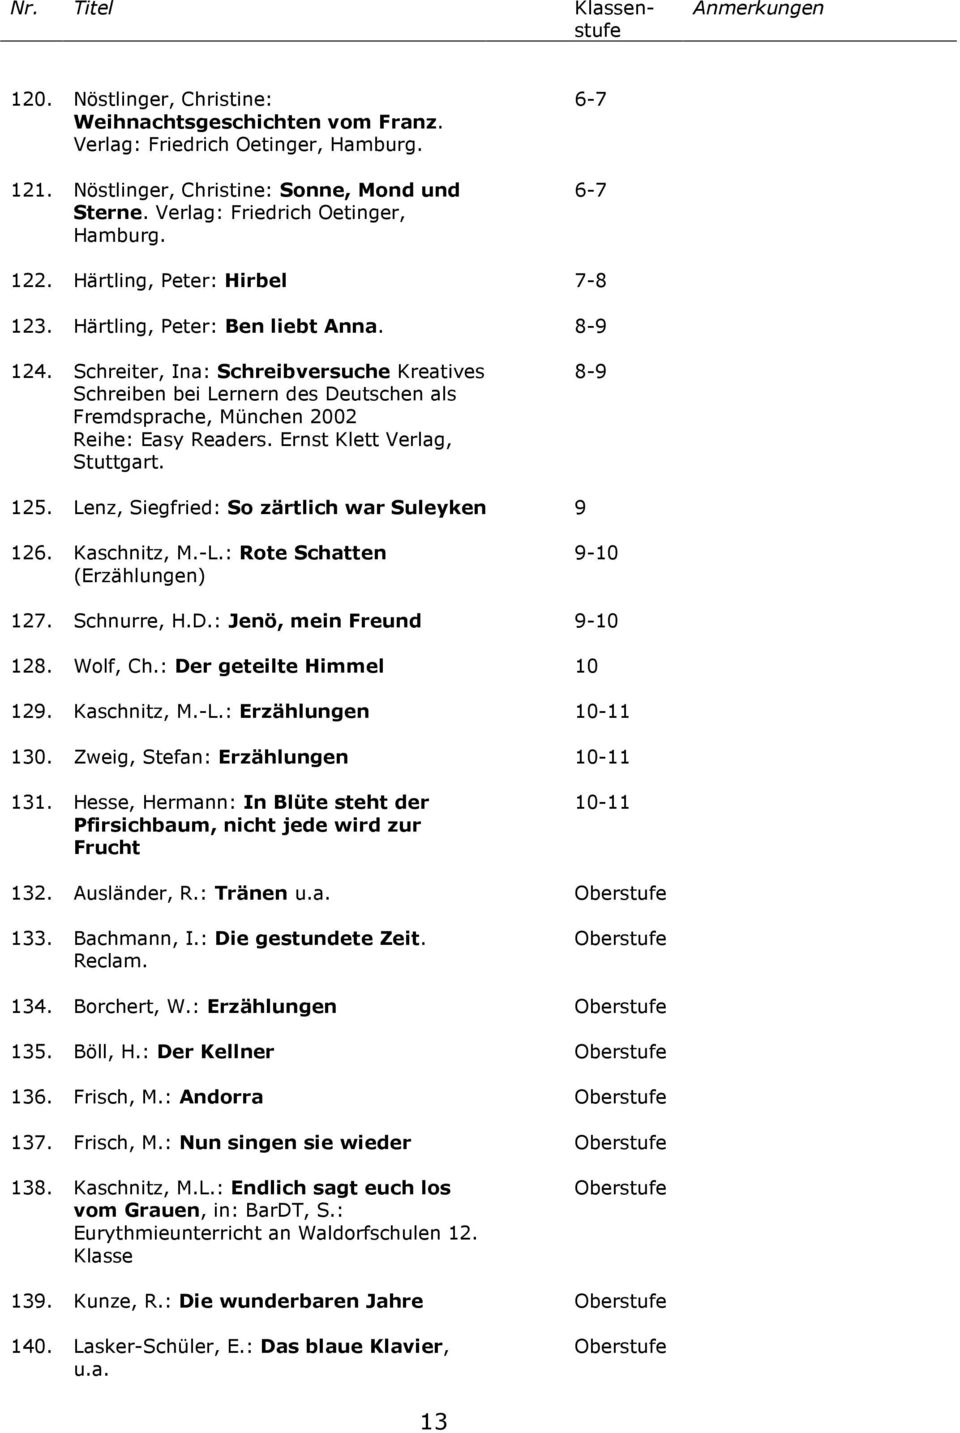 Schreiter, Ina: Schreibversuche Kreatives Schreiben bei Lernern des Deutschen als Fremdsprache, München 2002 Reihe: Easy Readers. Ernst Klett Verlag, Stuttgart. 8-9 125.